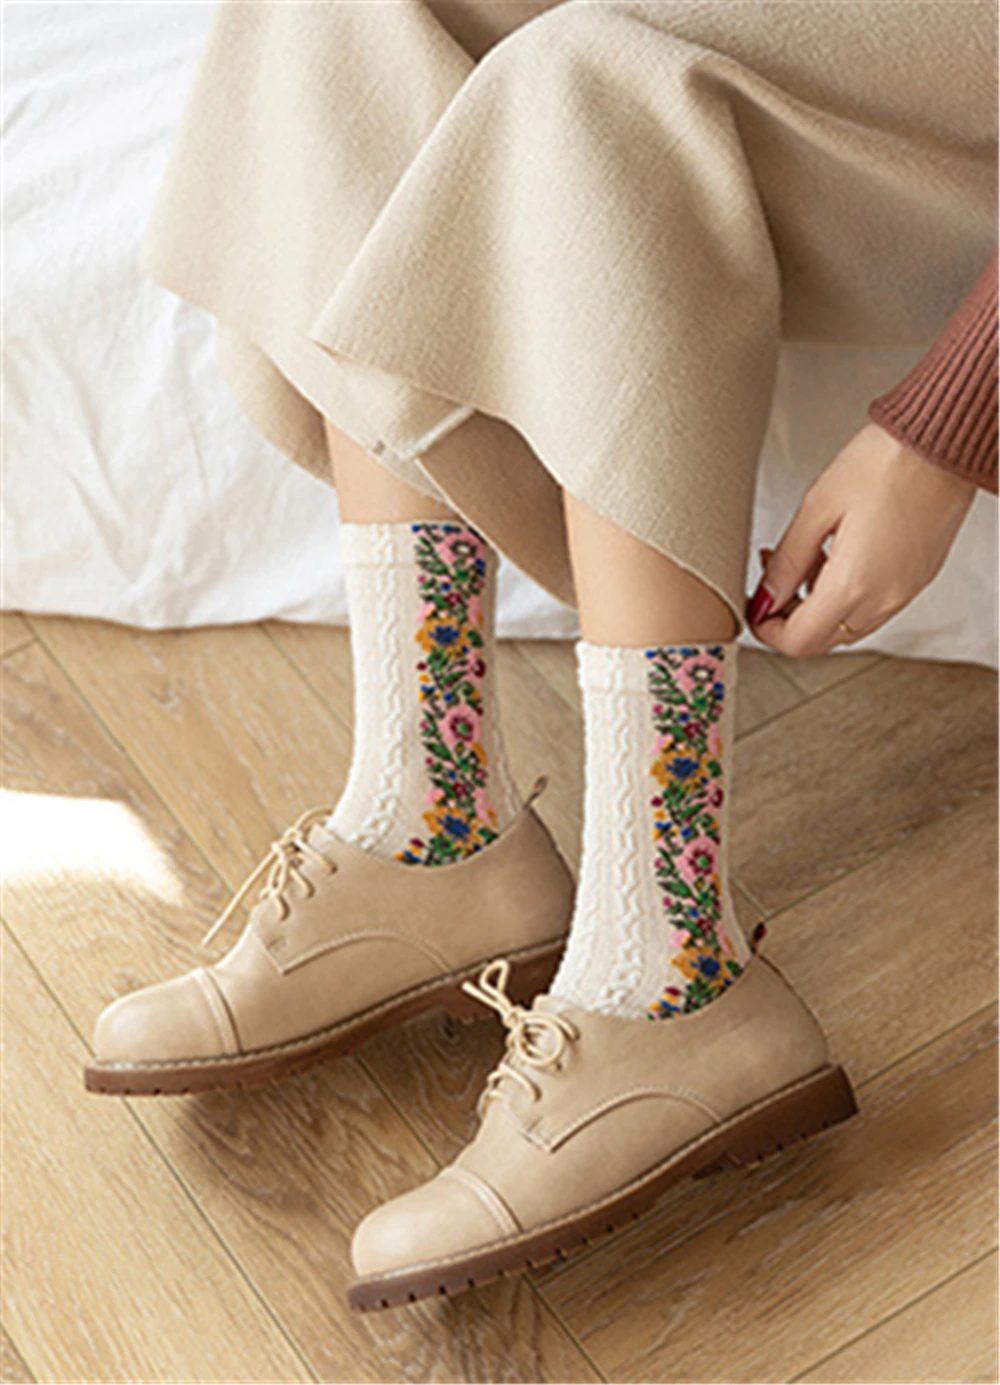 Новинка, модные женские хлопковые носки в европейском и американском стиле с цветочным узором, сезон осень-зима, женские теплые носки с милым узором в стиле ретро